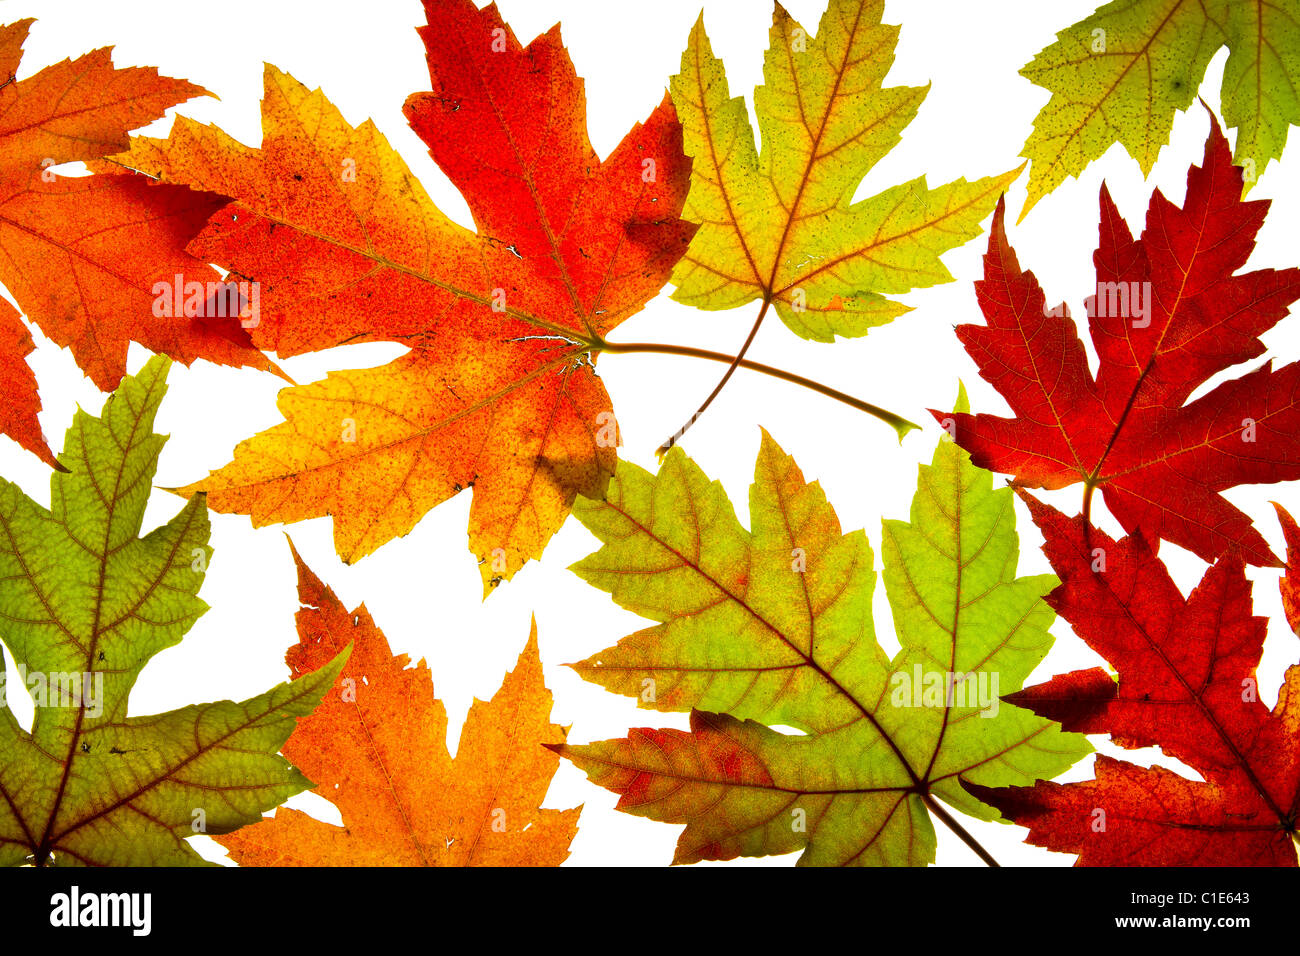 Ahorn-Blätter gemischt Herbst Farben Hintergrund Hintergrundbeleuchtung ändern Stockfoto